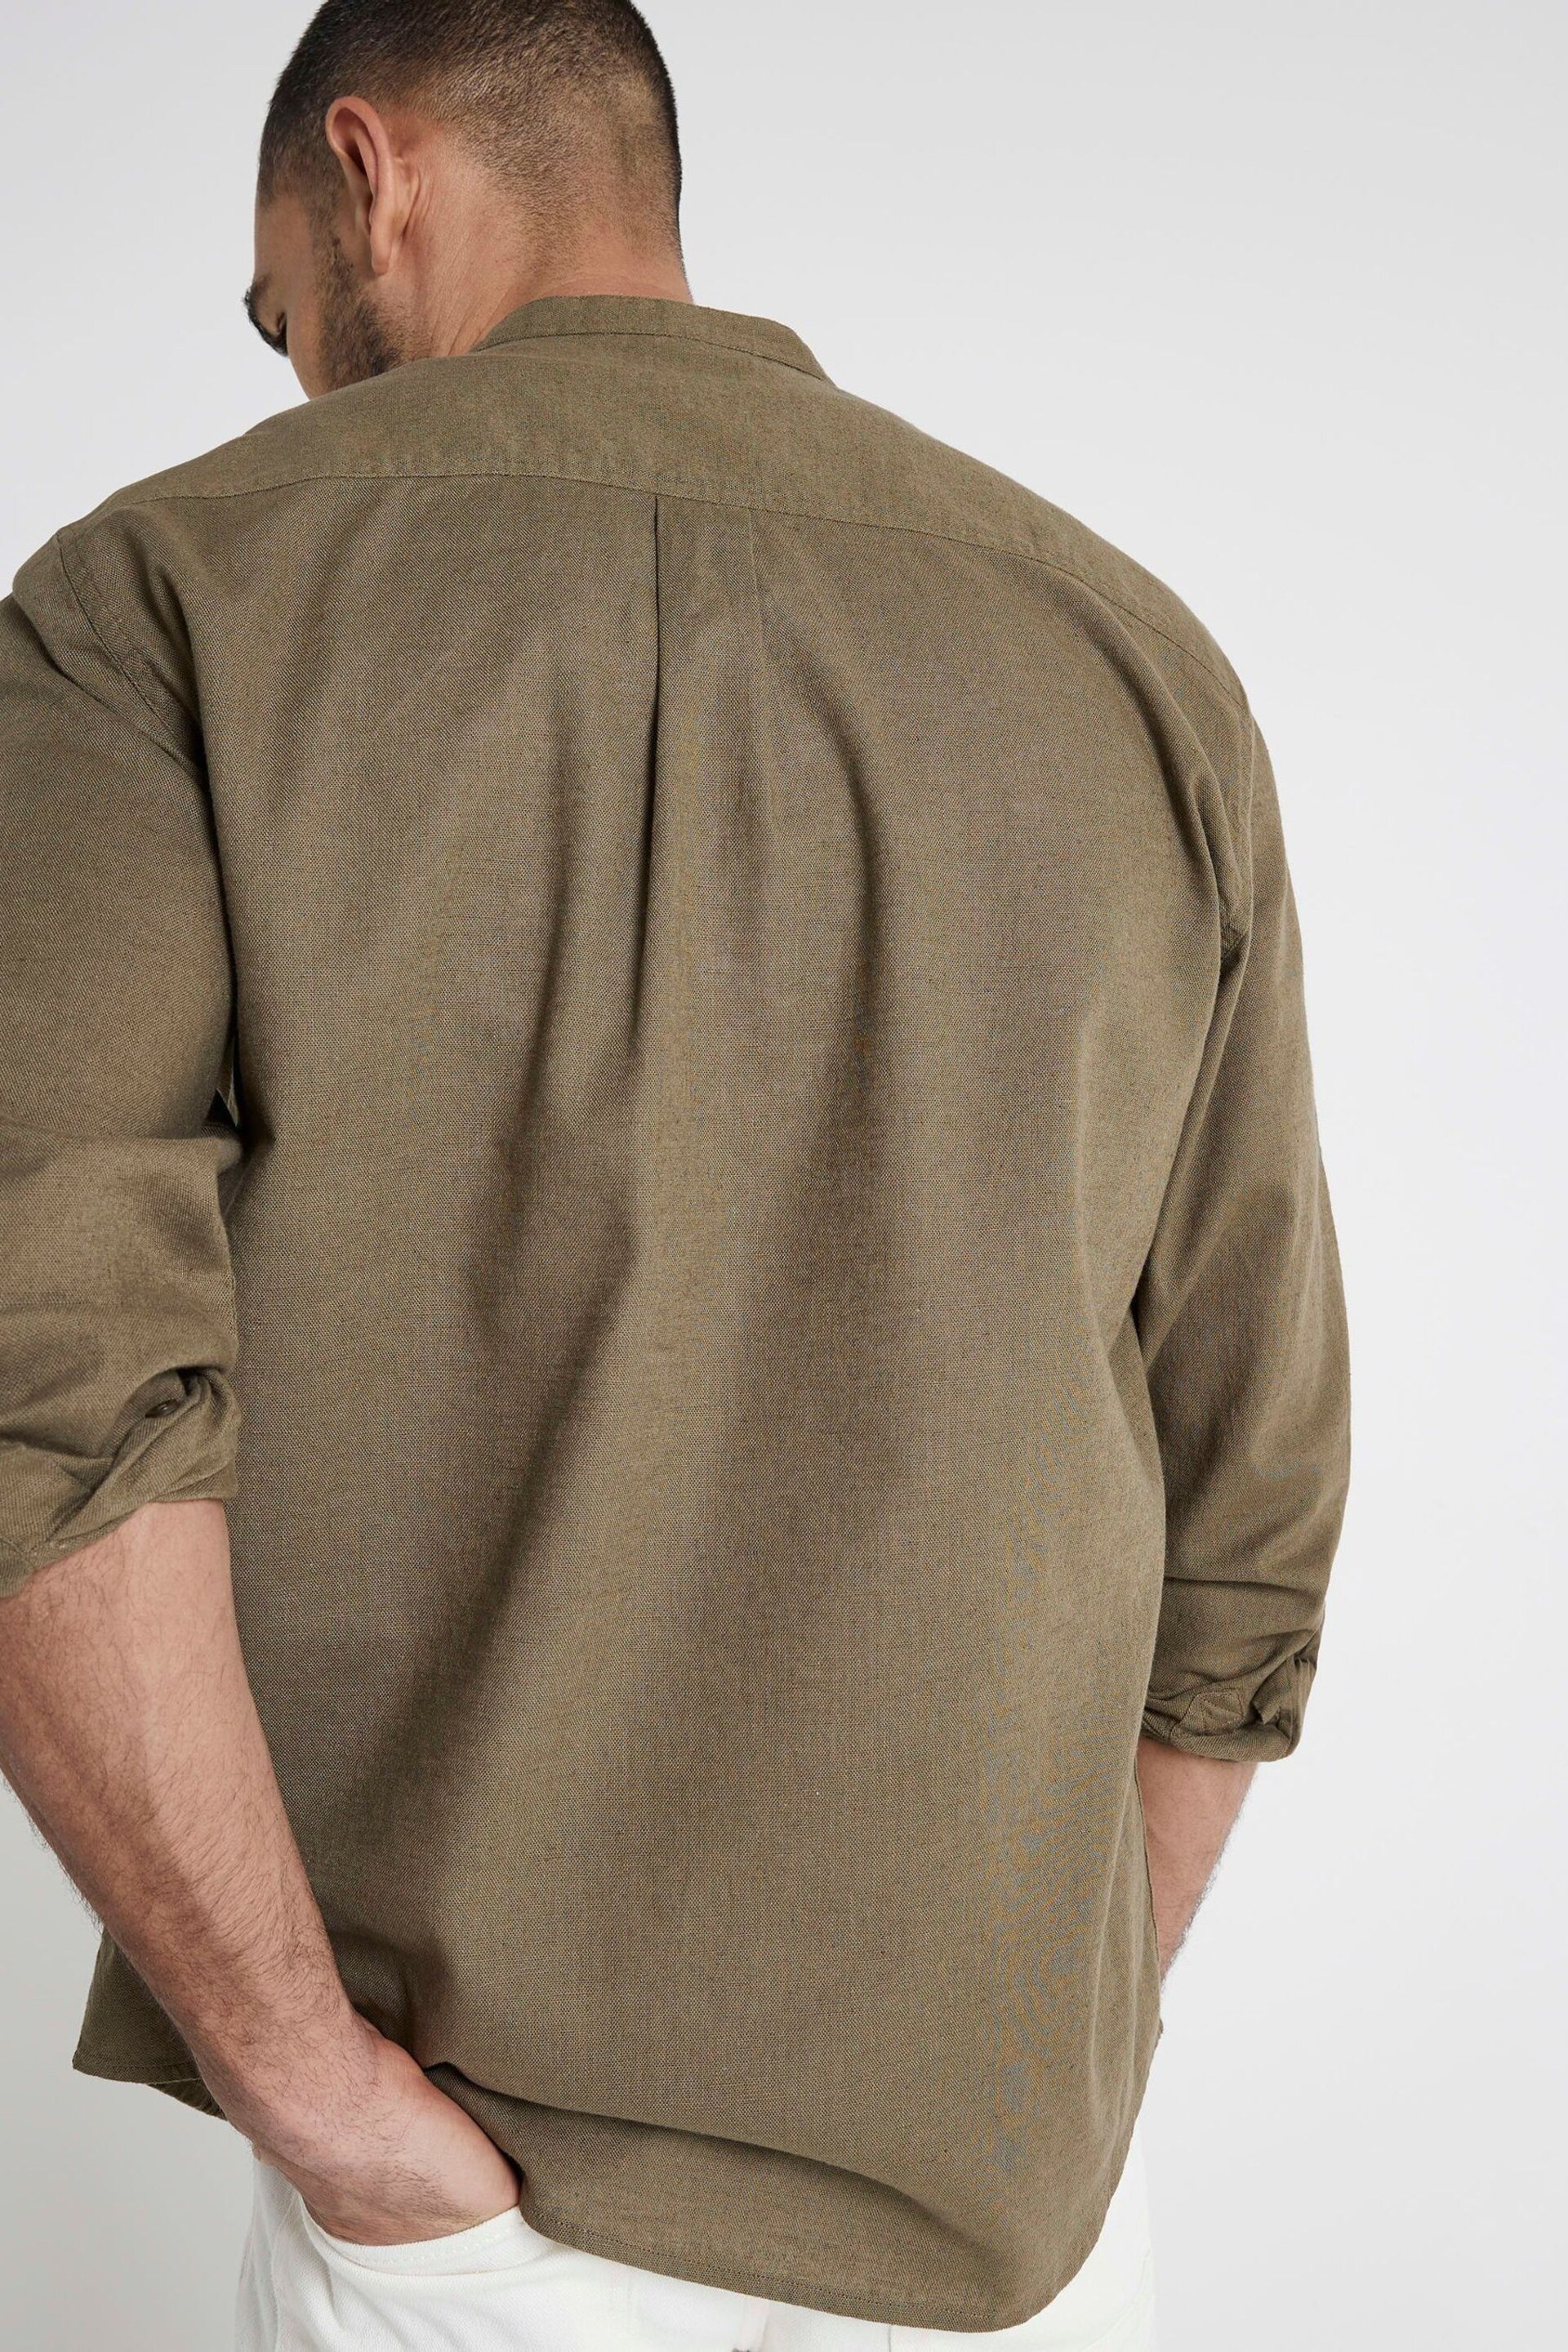 River Island Green Regular Fit Long Sleeve Linen Blend Shirt - Image 3 of 4